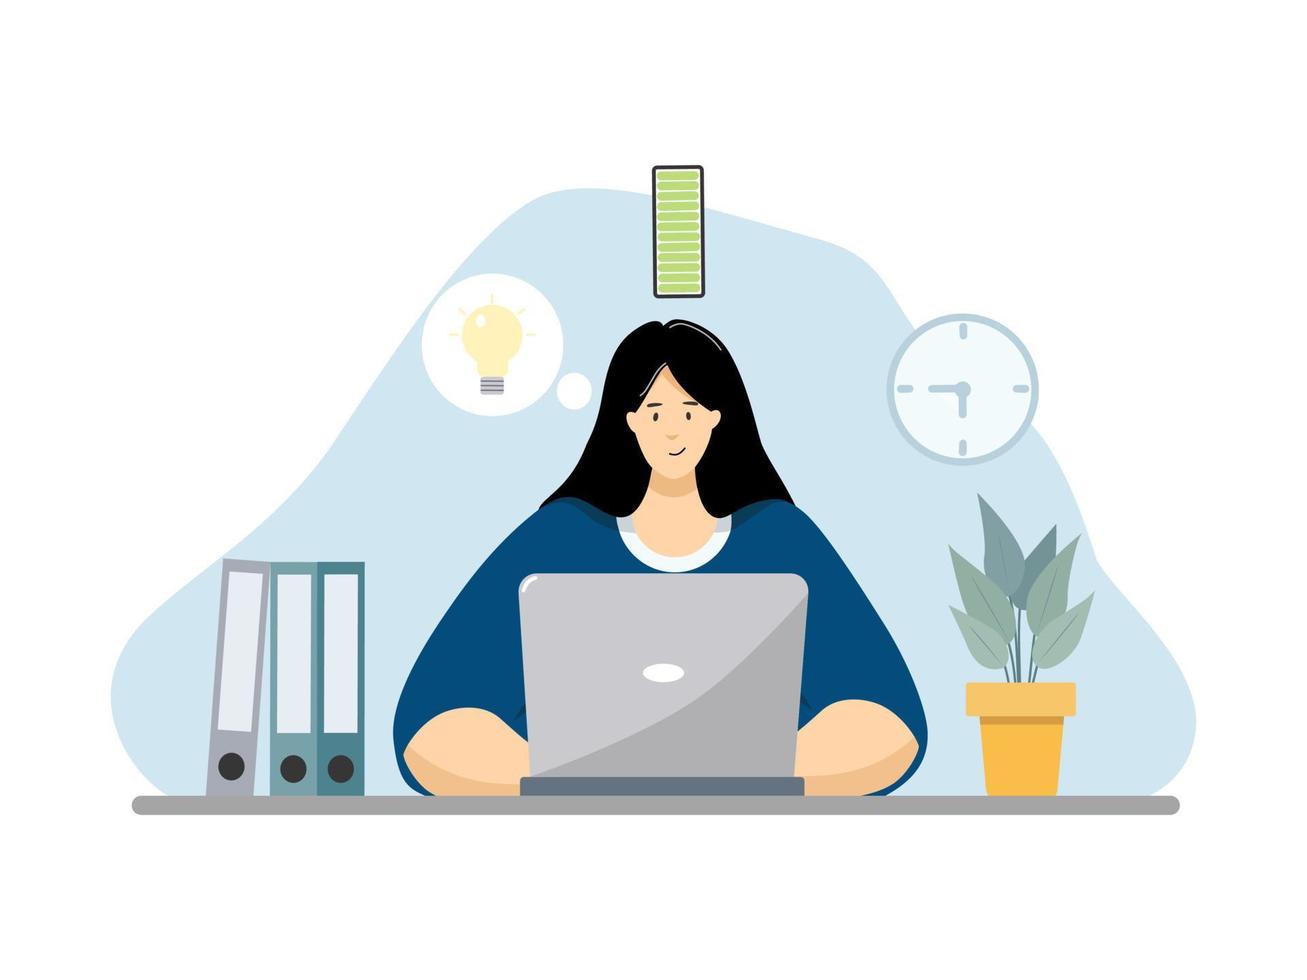 mujer que trabaja en la computadora en la oficina., gerente femenina con computadora portátil, ilustración plana de vector de negocios.